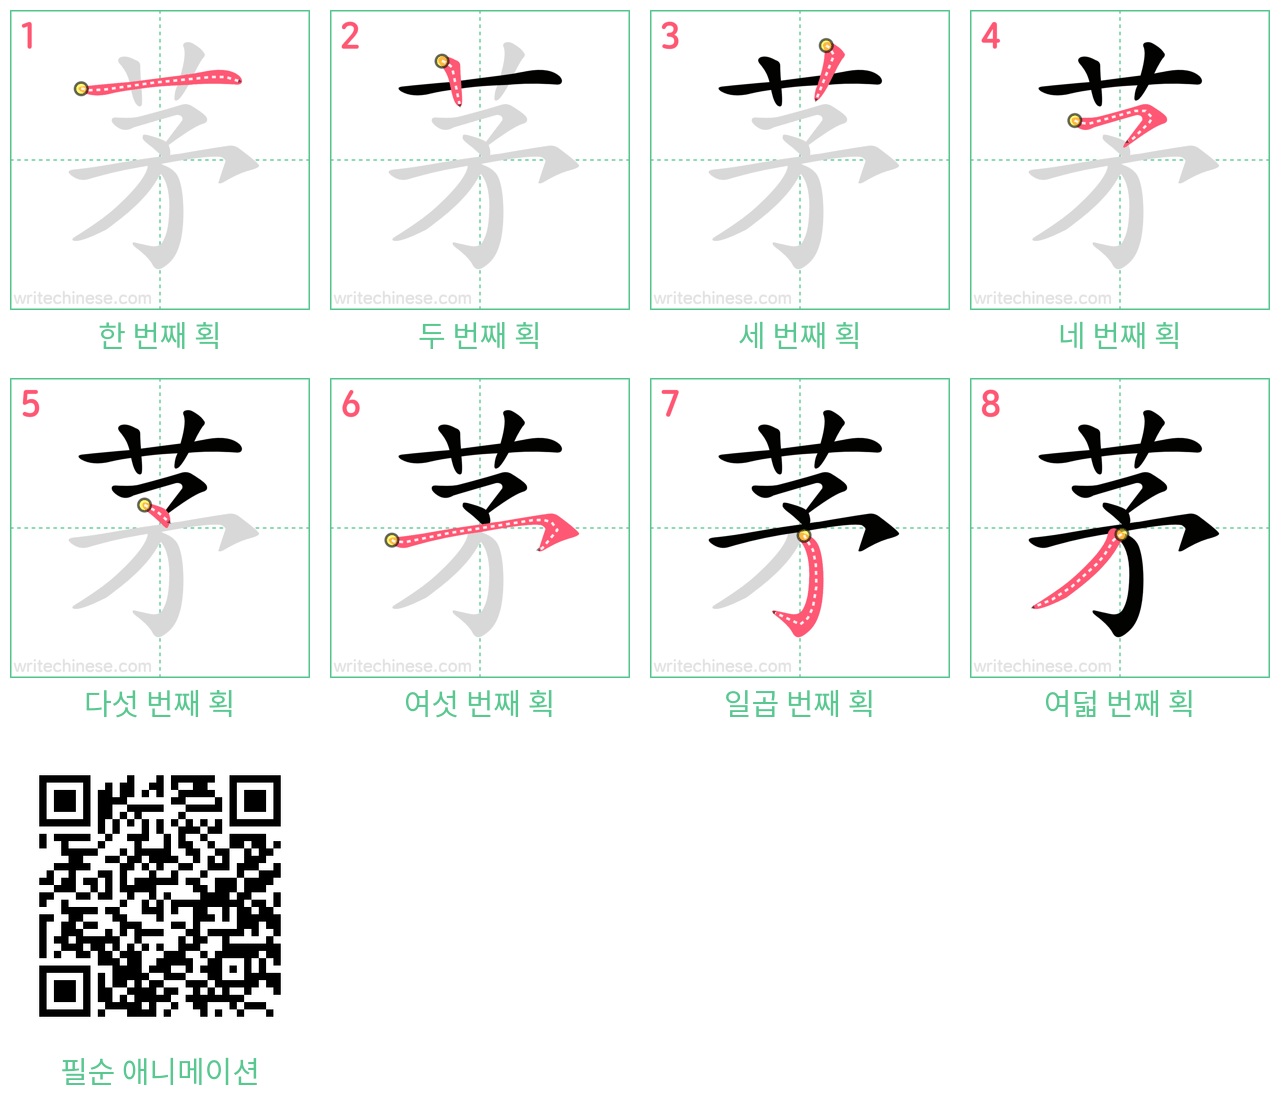 茅 step-by-step stroke order diagrams